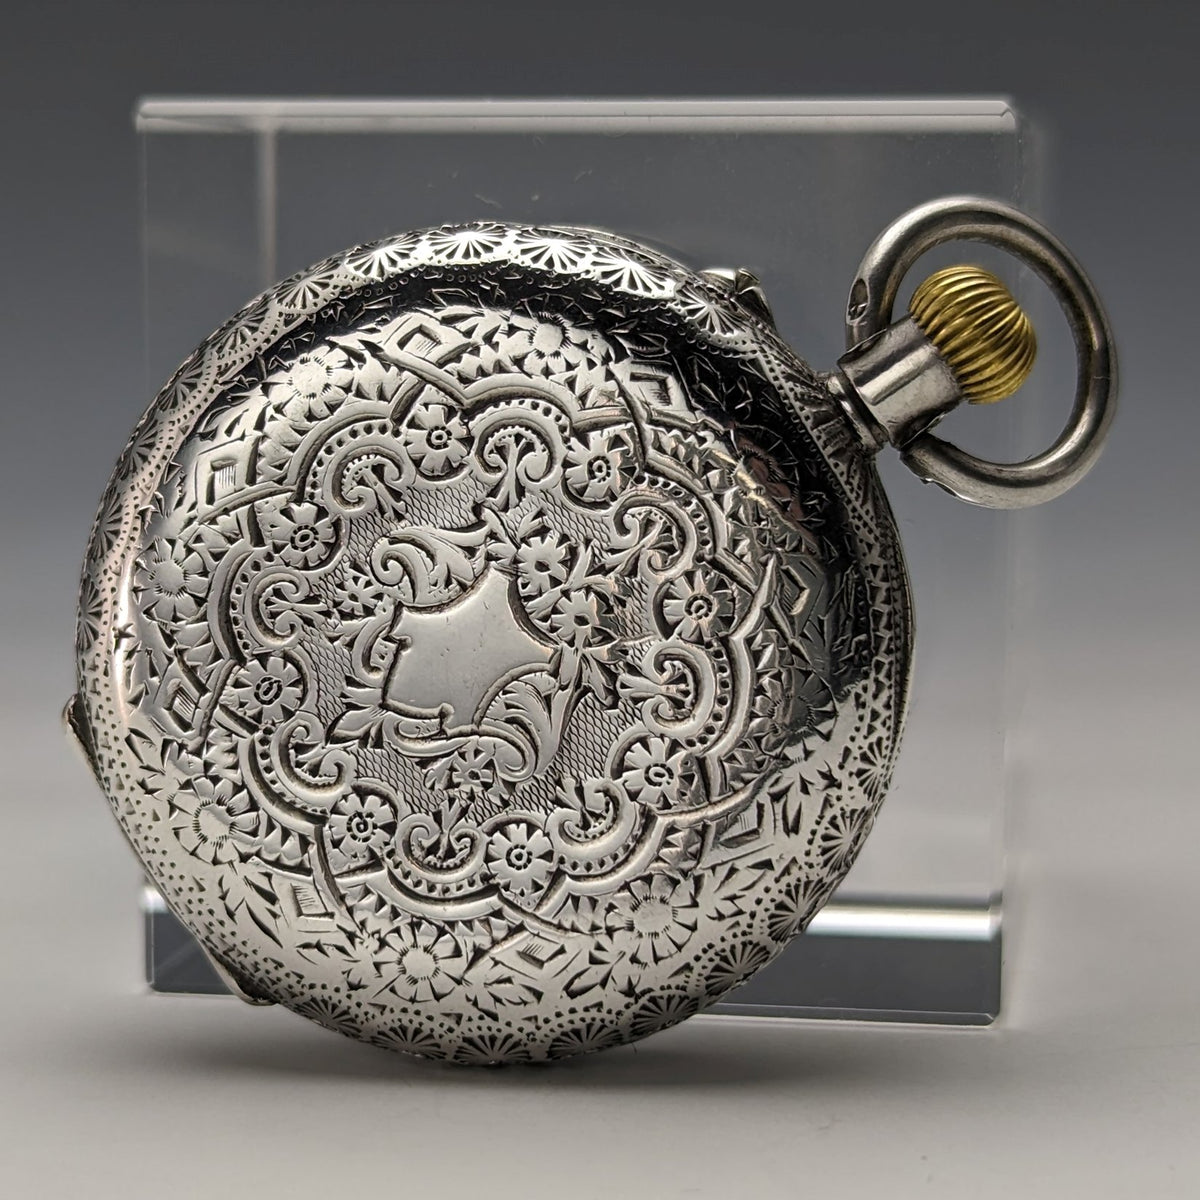 20世紀初頭 アンティーク スイス製 純銀細密彫刻ケース レディース懐中時計 動作良好